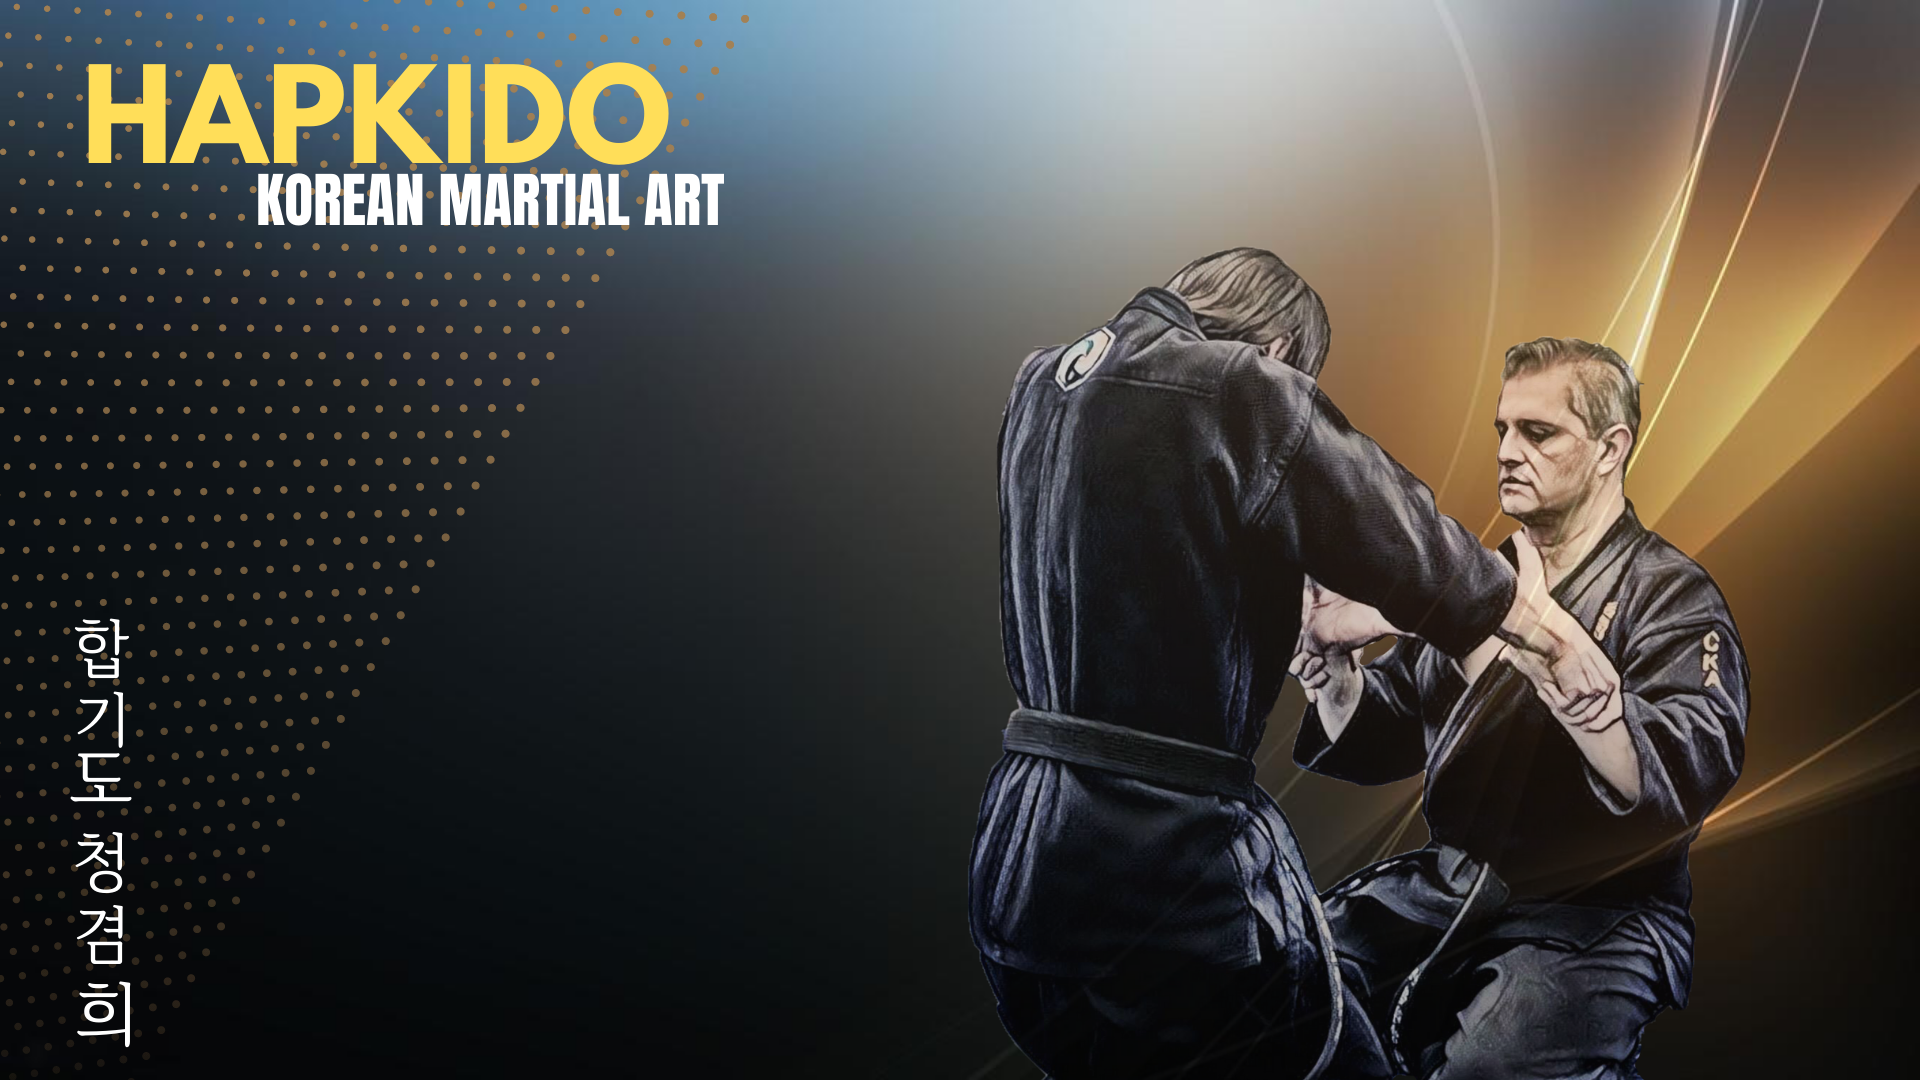 Hapkido Korean Martial Arts 1920x1080